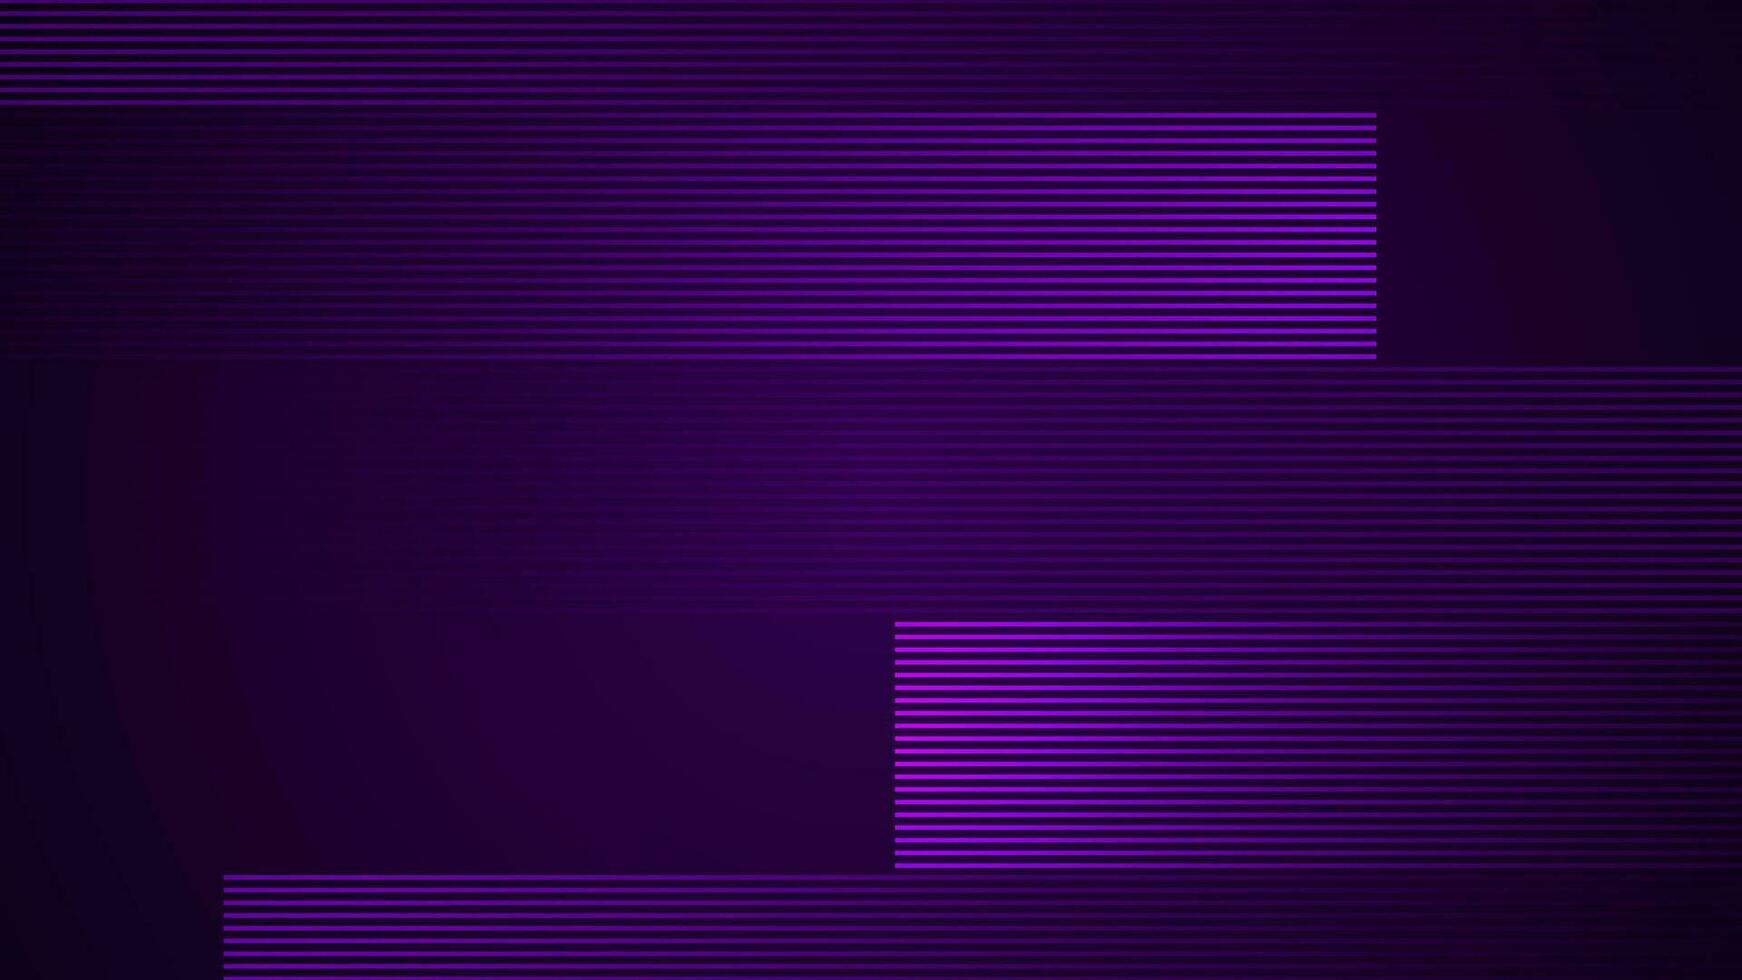 oscuro Violeta sencillo resumen antecedentes con líneas en un geométrico estilo como el principal elemento. vector